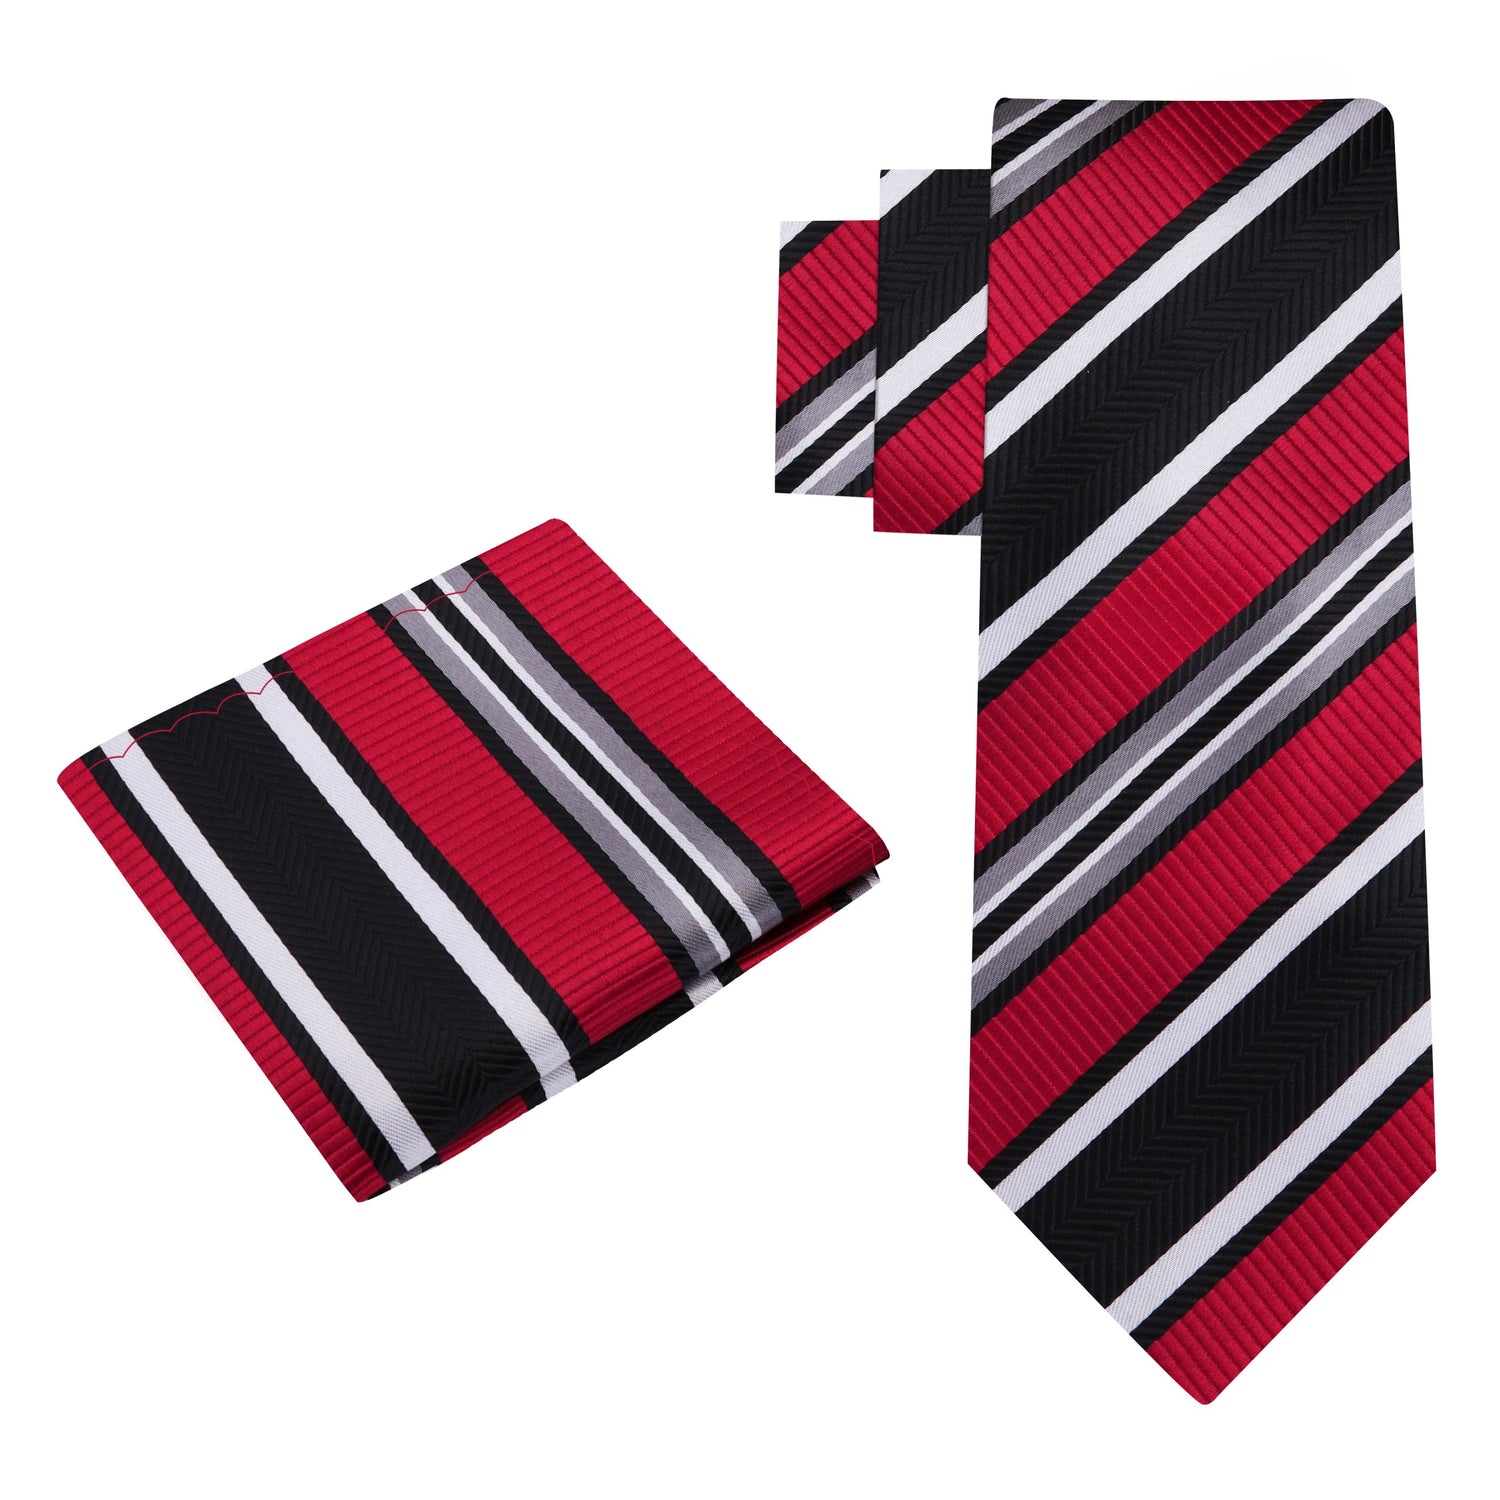 Alt View: A Red, Black, White Stripe Pattern Silk Necktie, Matching Pocket Square